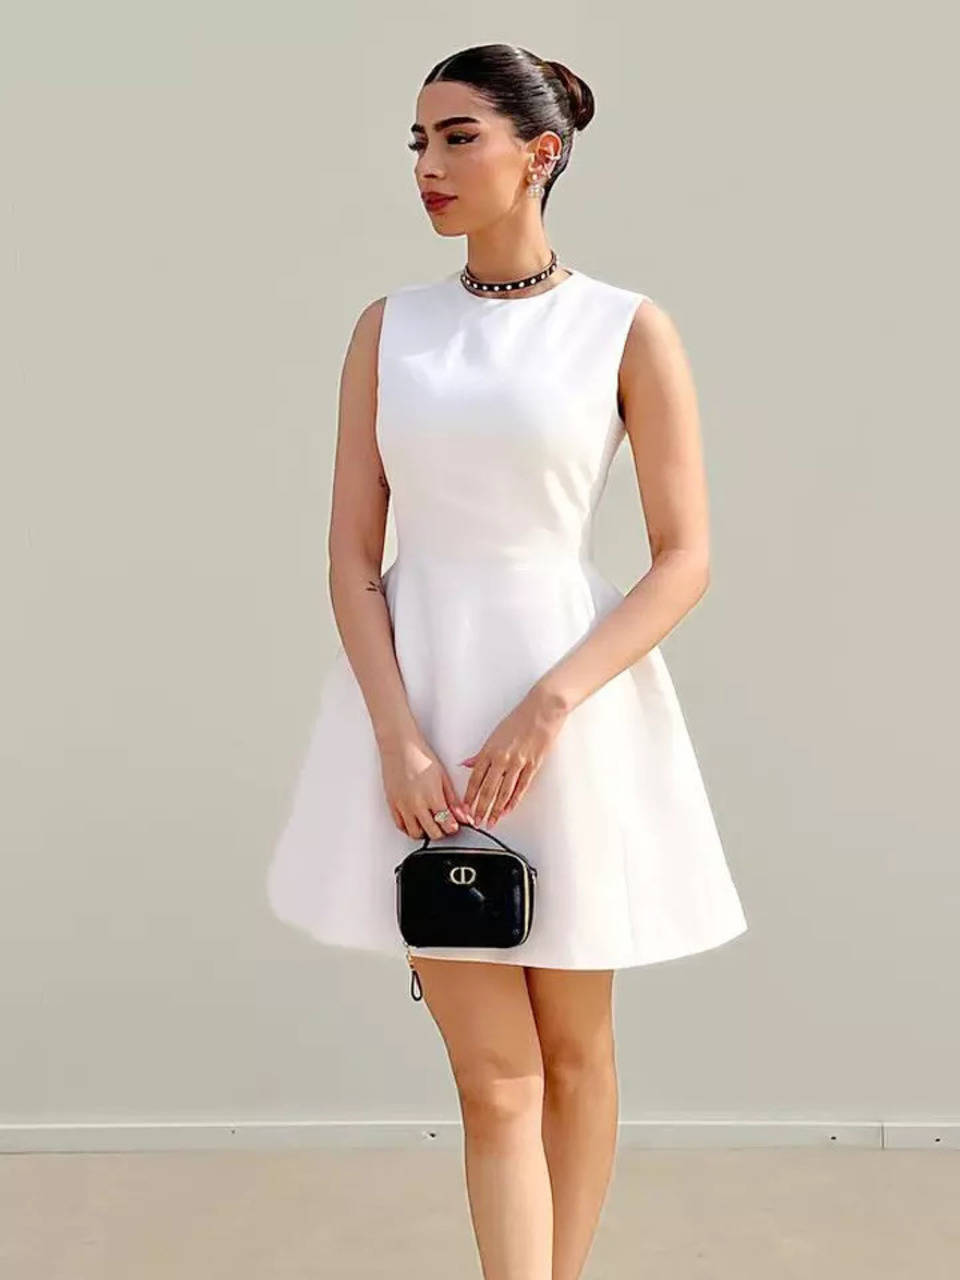 Khushi Kapoor keeps it classy in elegant white dress at Dior's Paris Fashion  Week